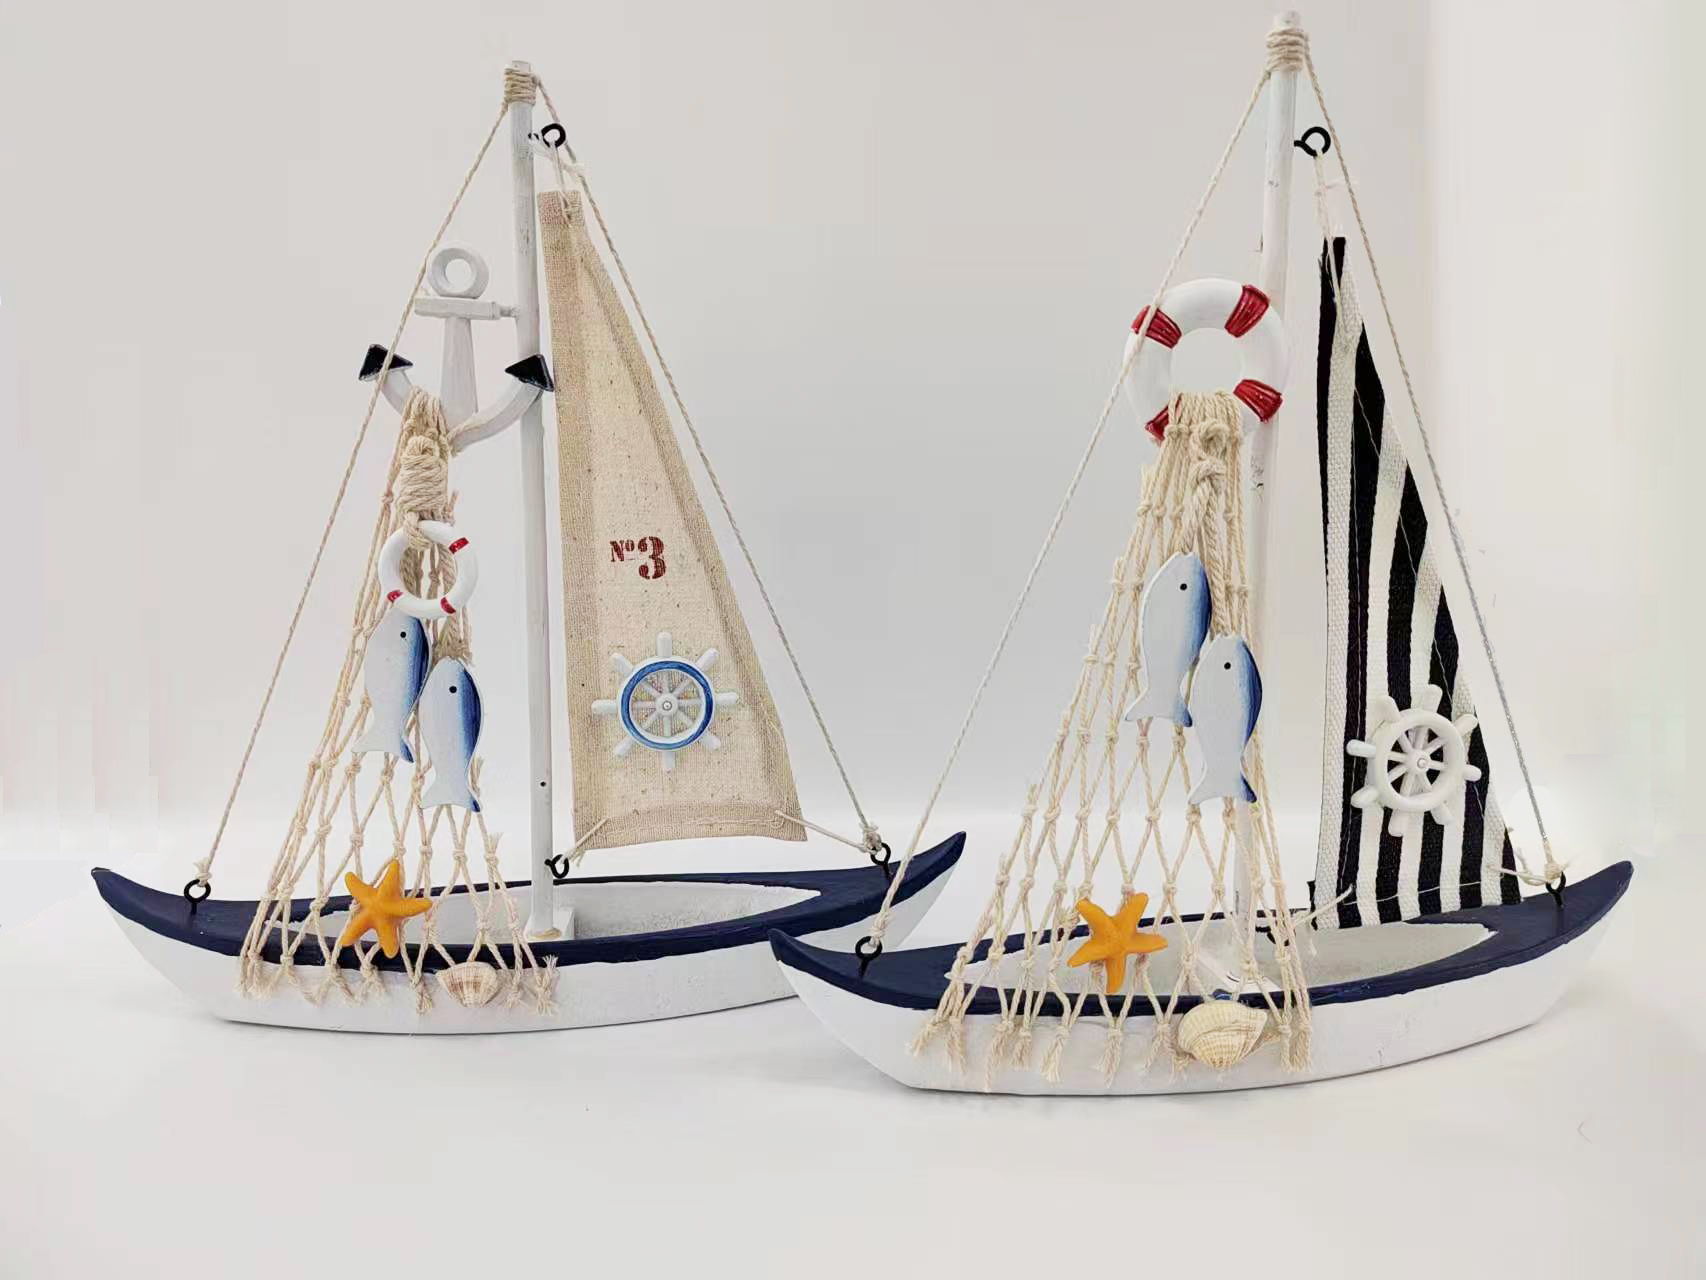 美式帆船 地中海风格船 家居饰品船模创意家居 家居摆件2023W73